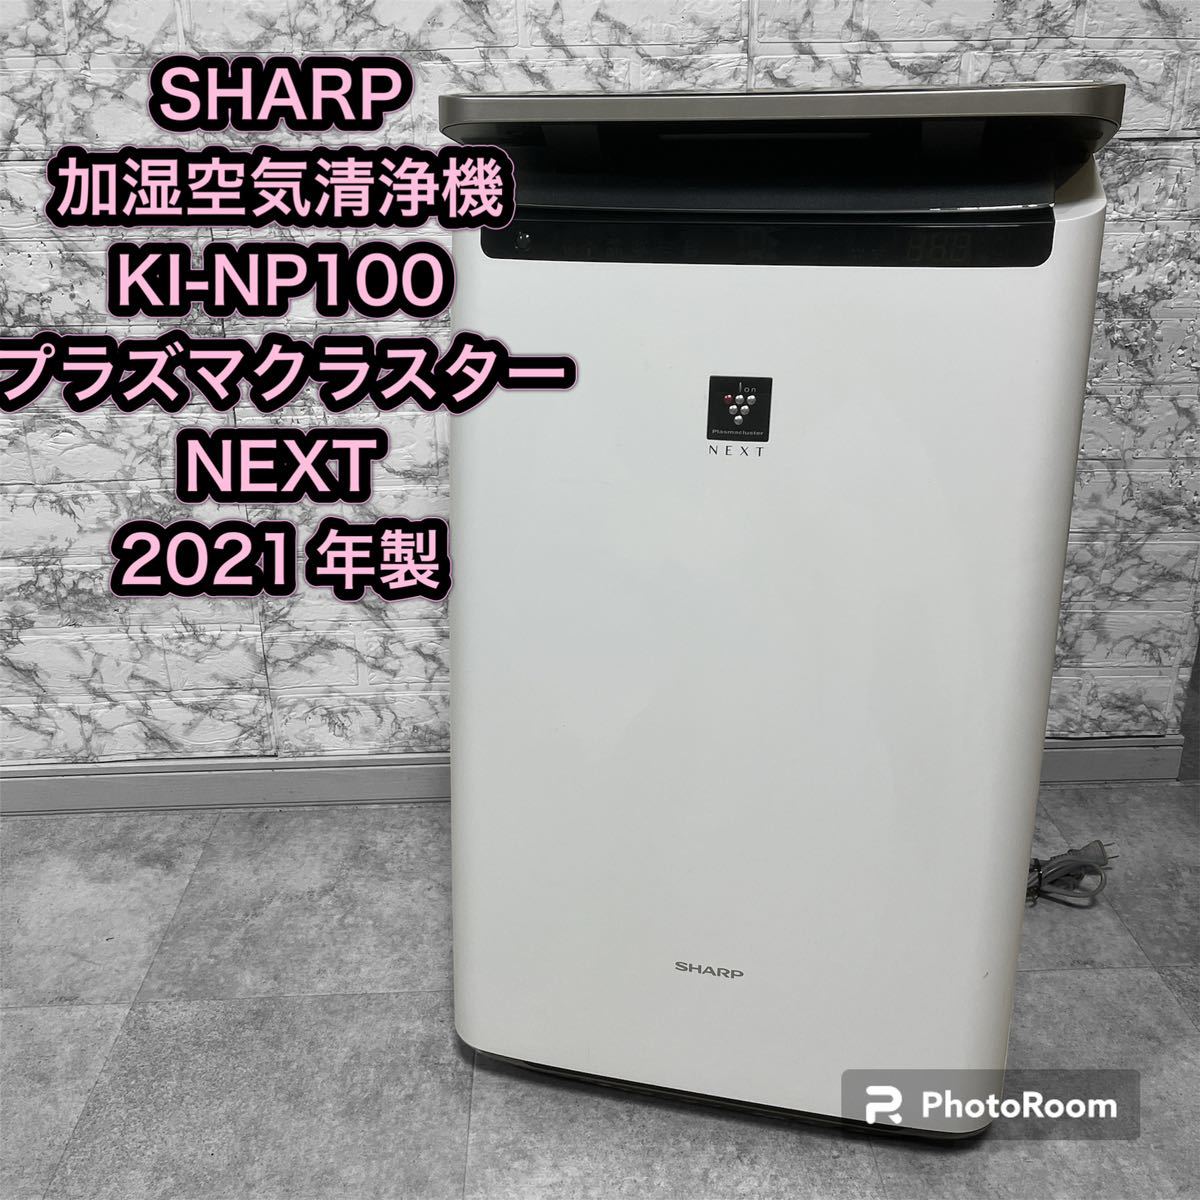 SHARP KI-NP 100 プラズマクラスターNEXT - 空気清浄器